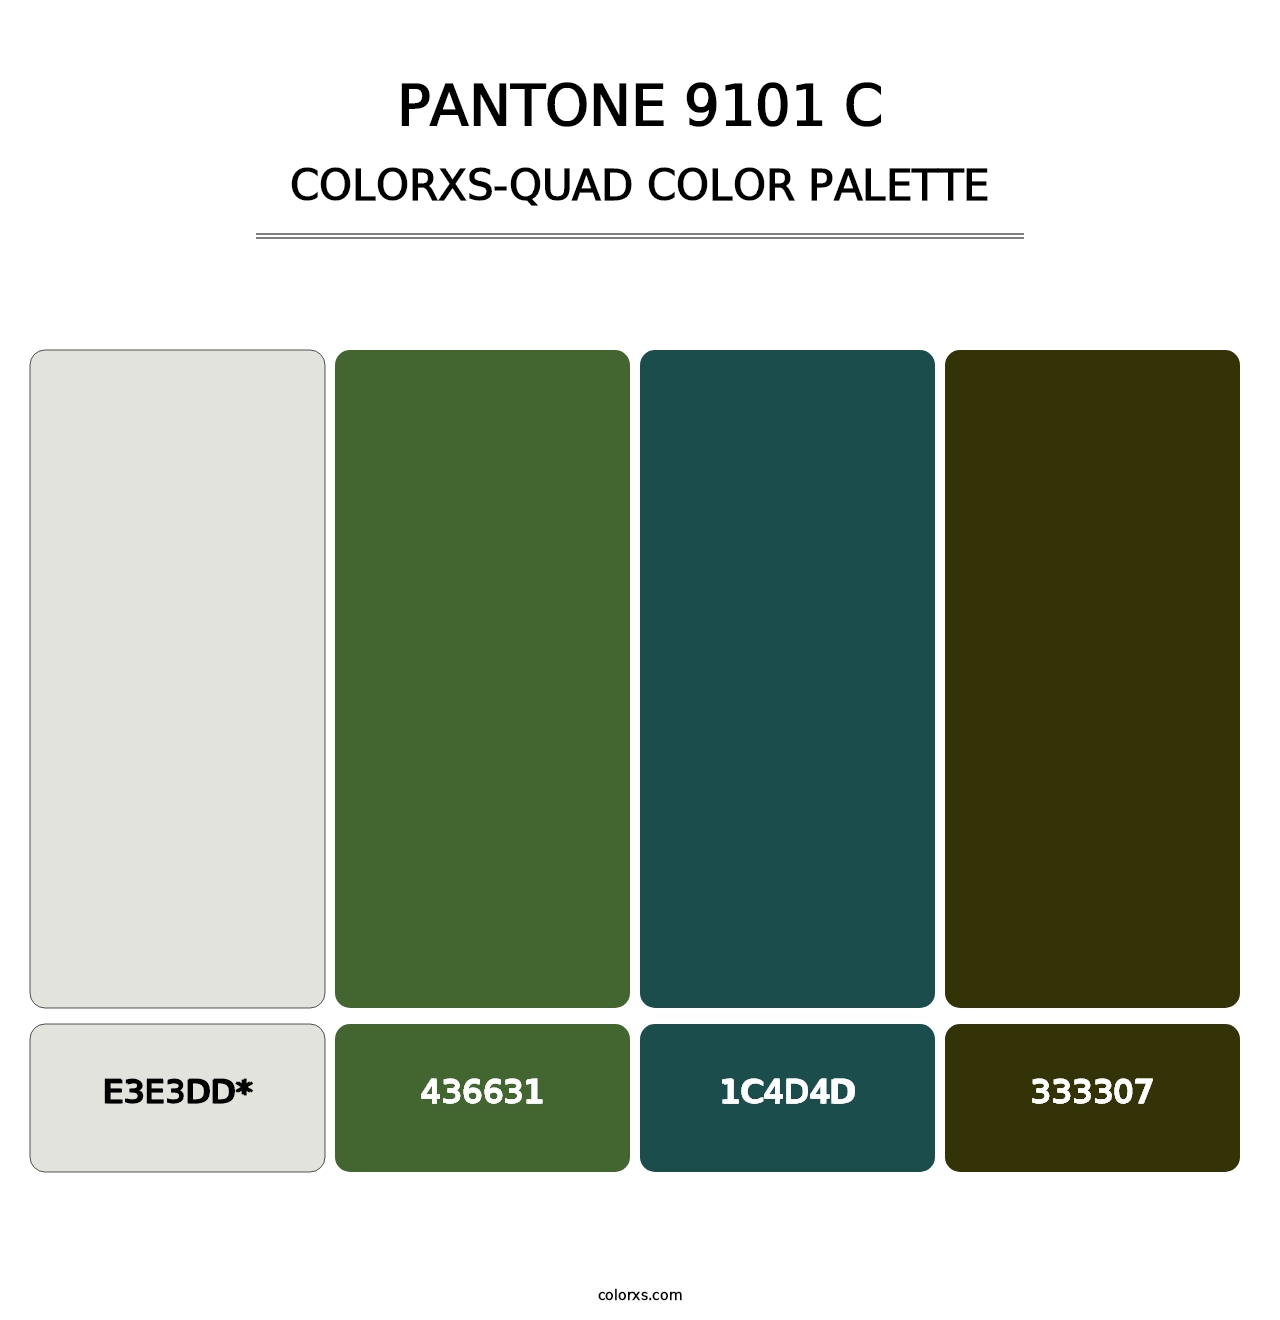 PANTONE 9101 C - Colorxs Quad Palette